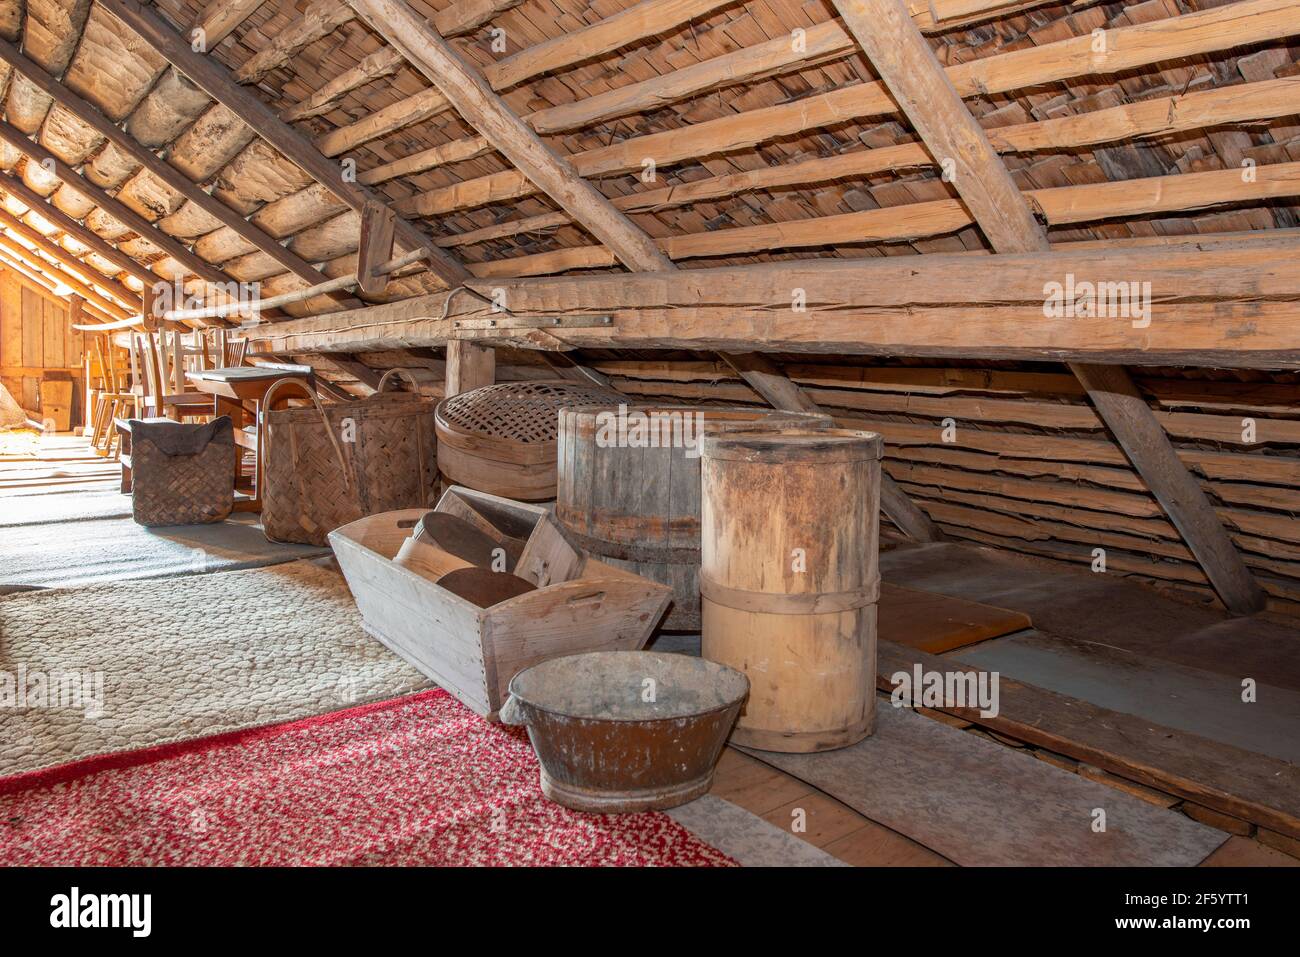 https://c8.alamy.com/comp/2F5YTT1/attic-in-an-old-house-2F5YTT1.jpg